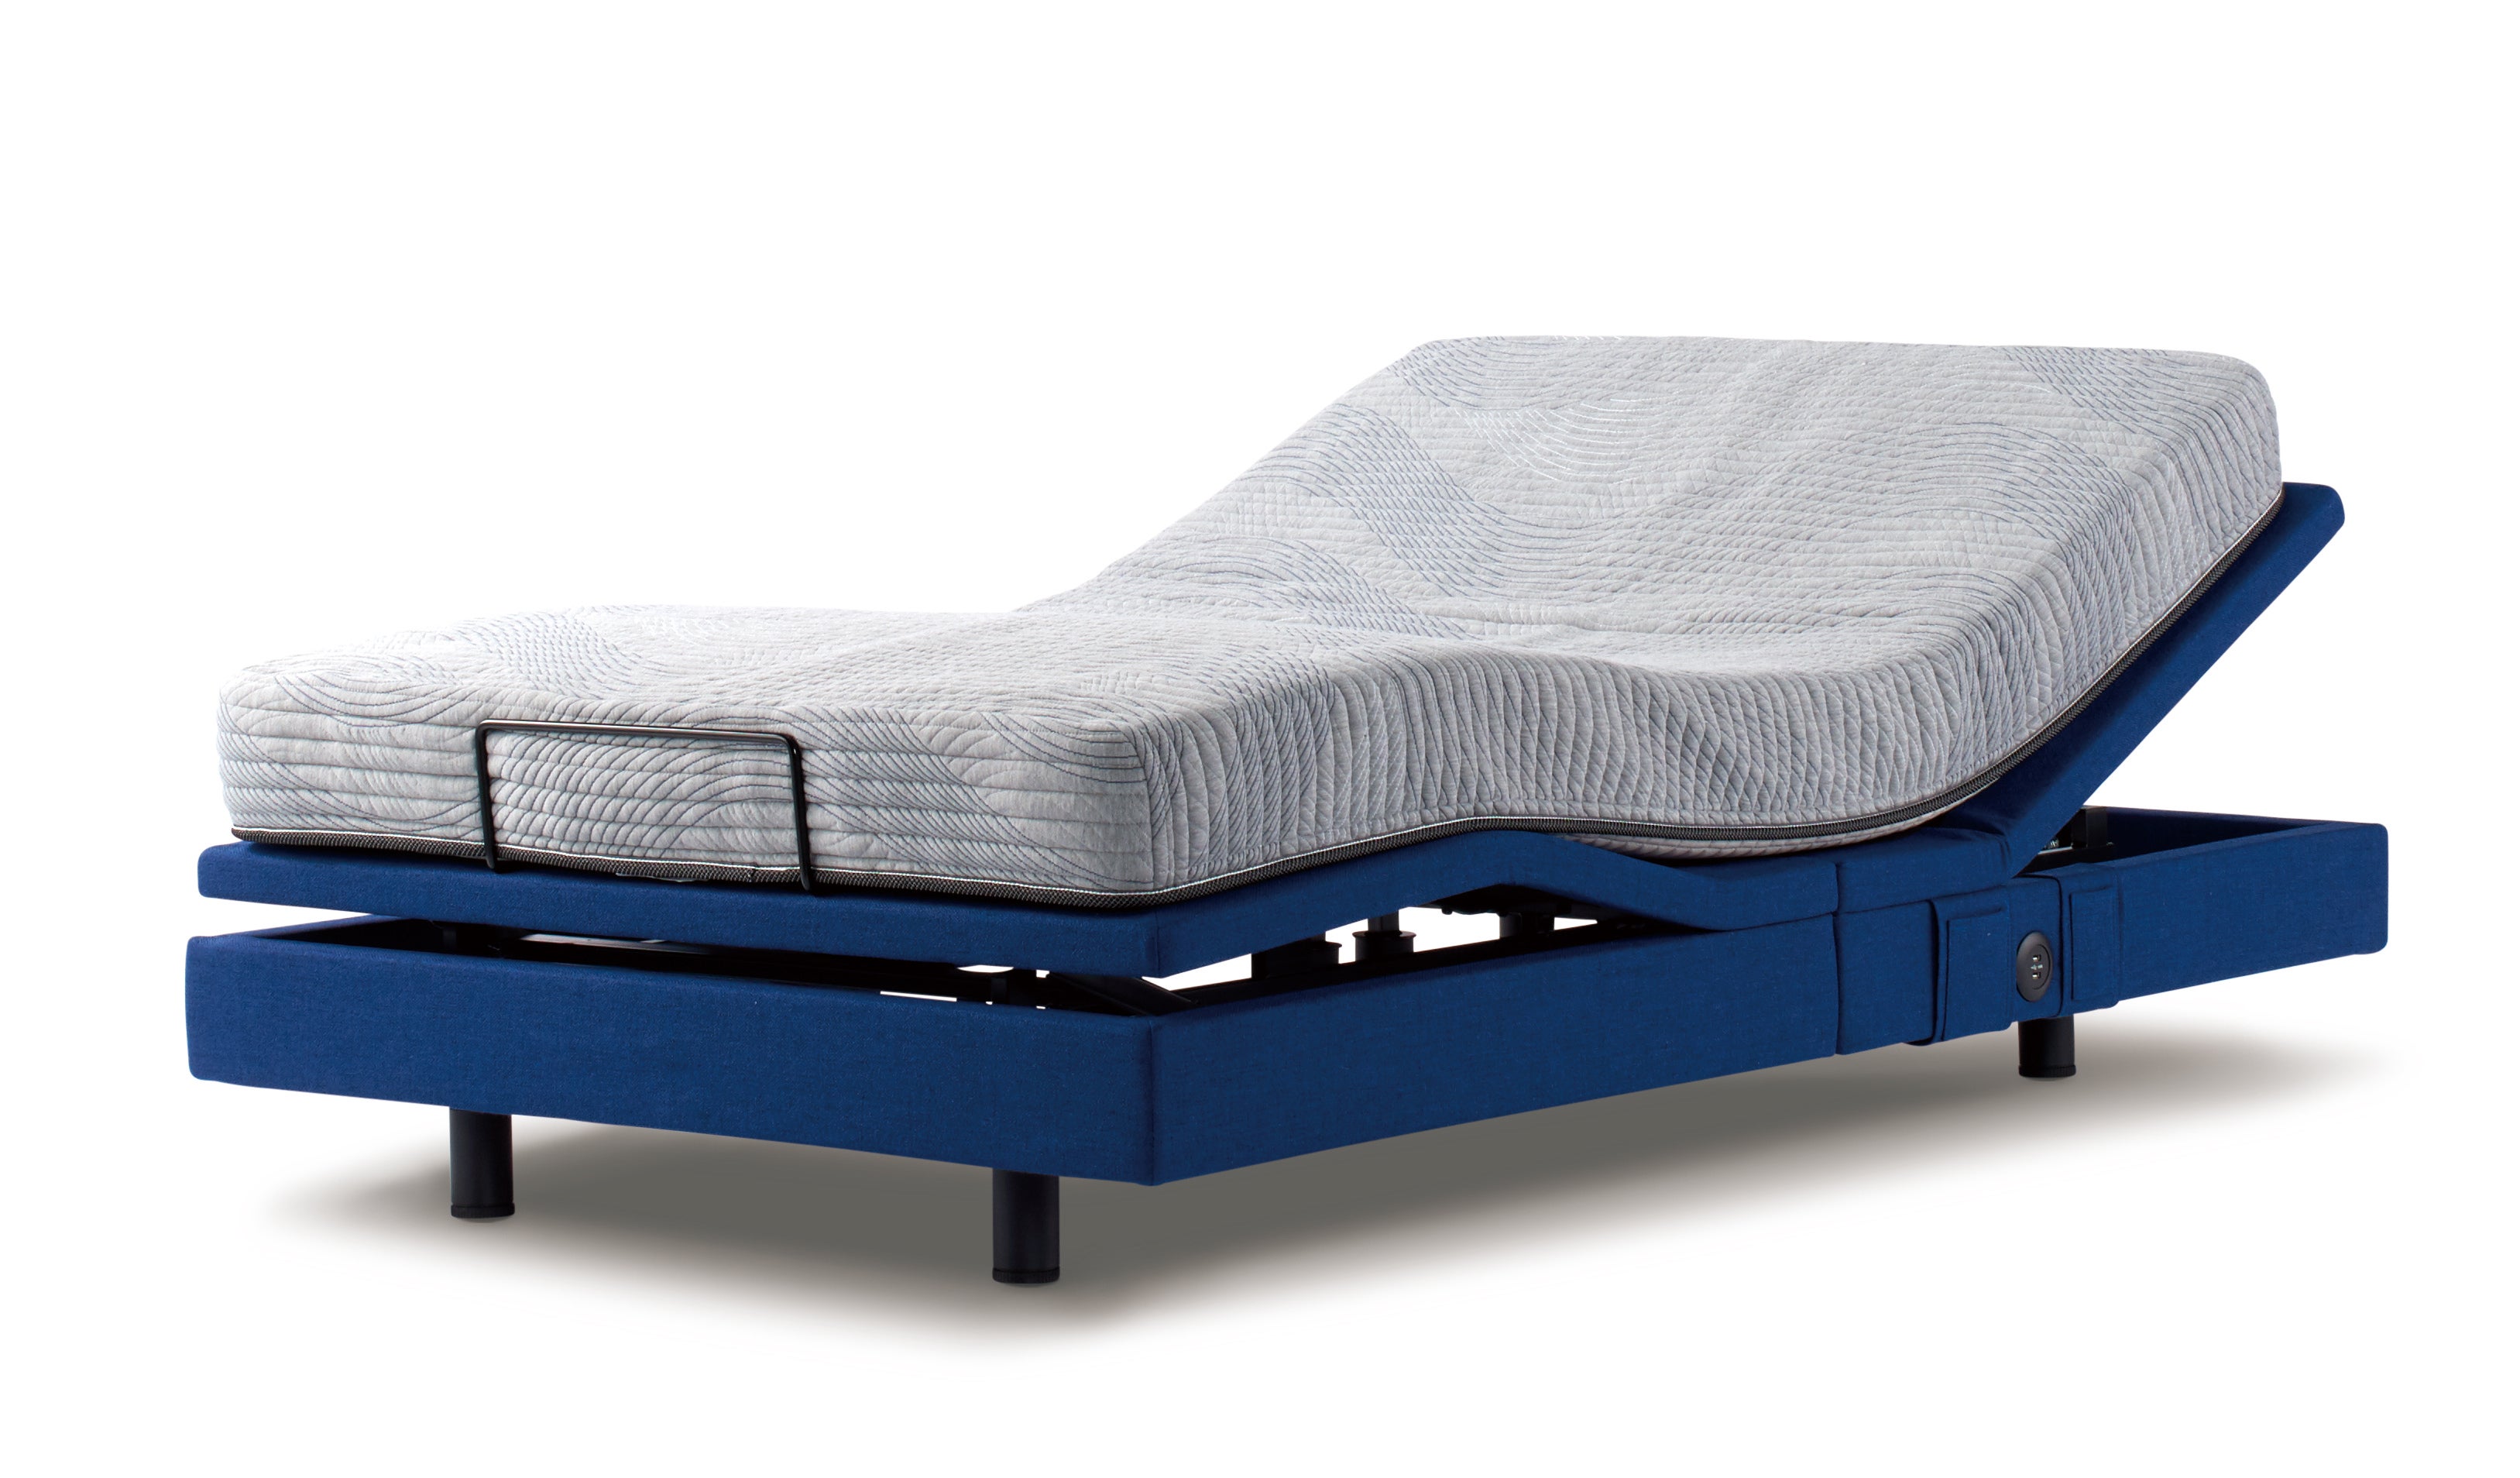 次世代型マルチ機能付き電動ベッド「シムレスト」